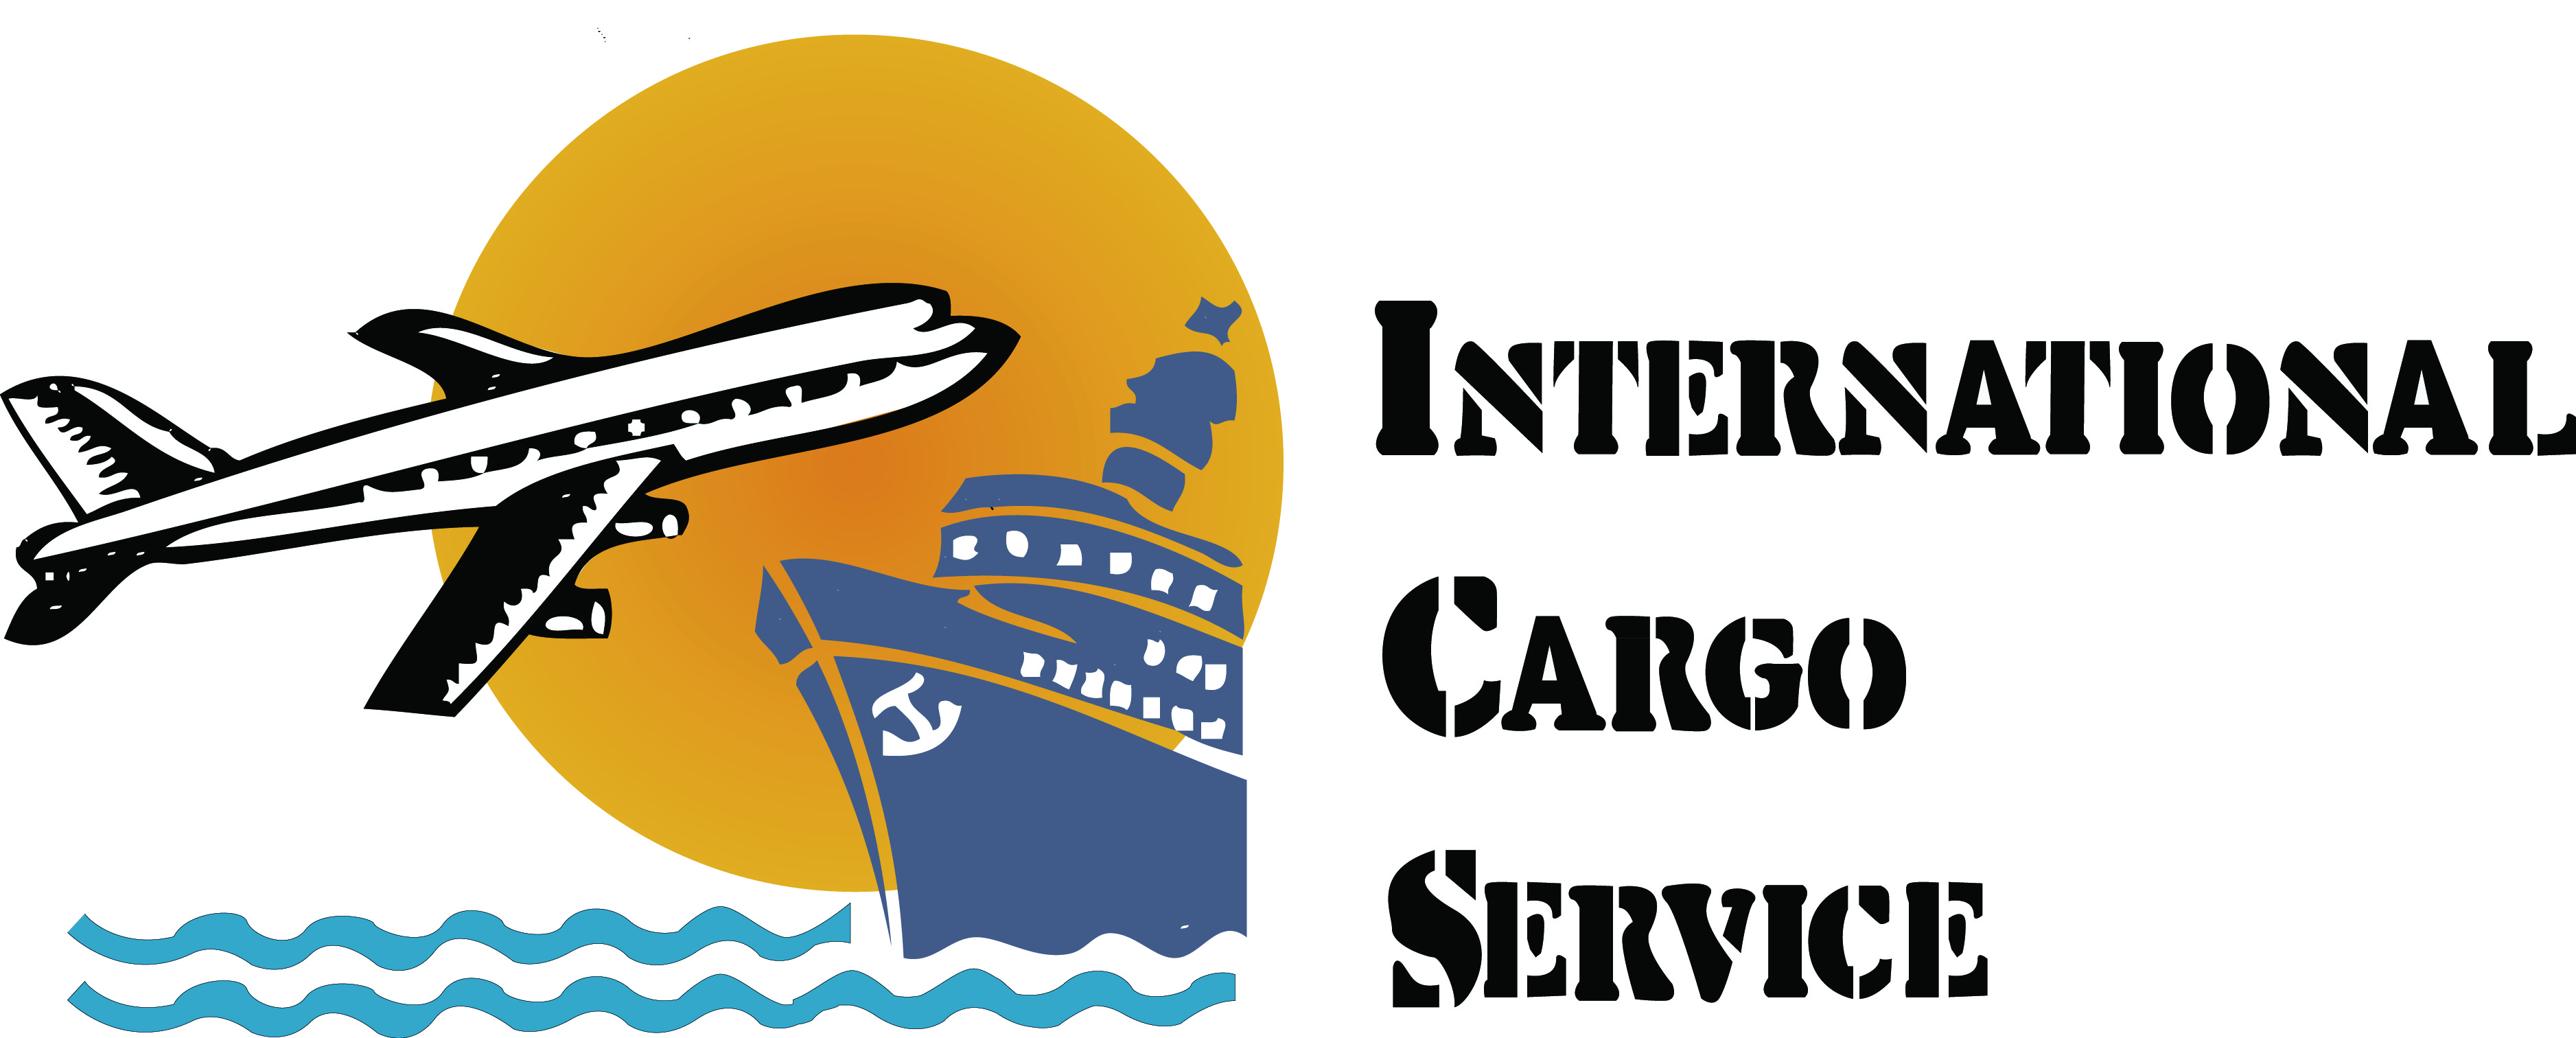 ICS logo